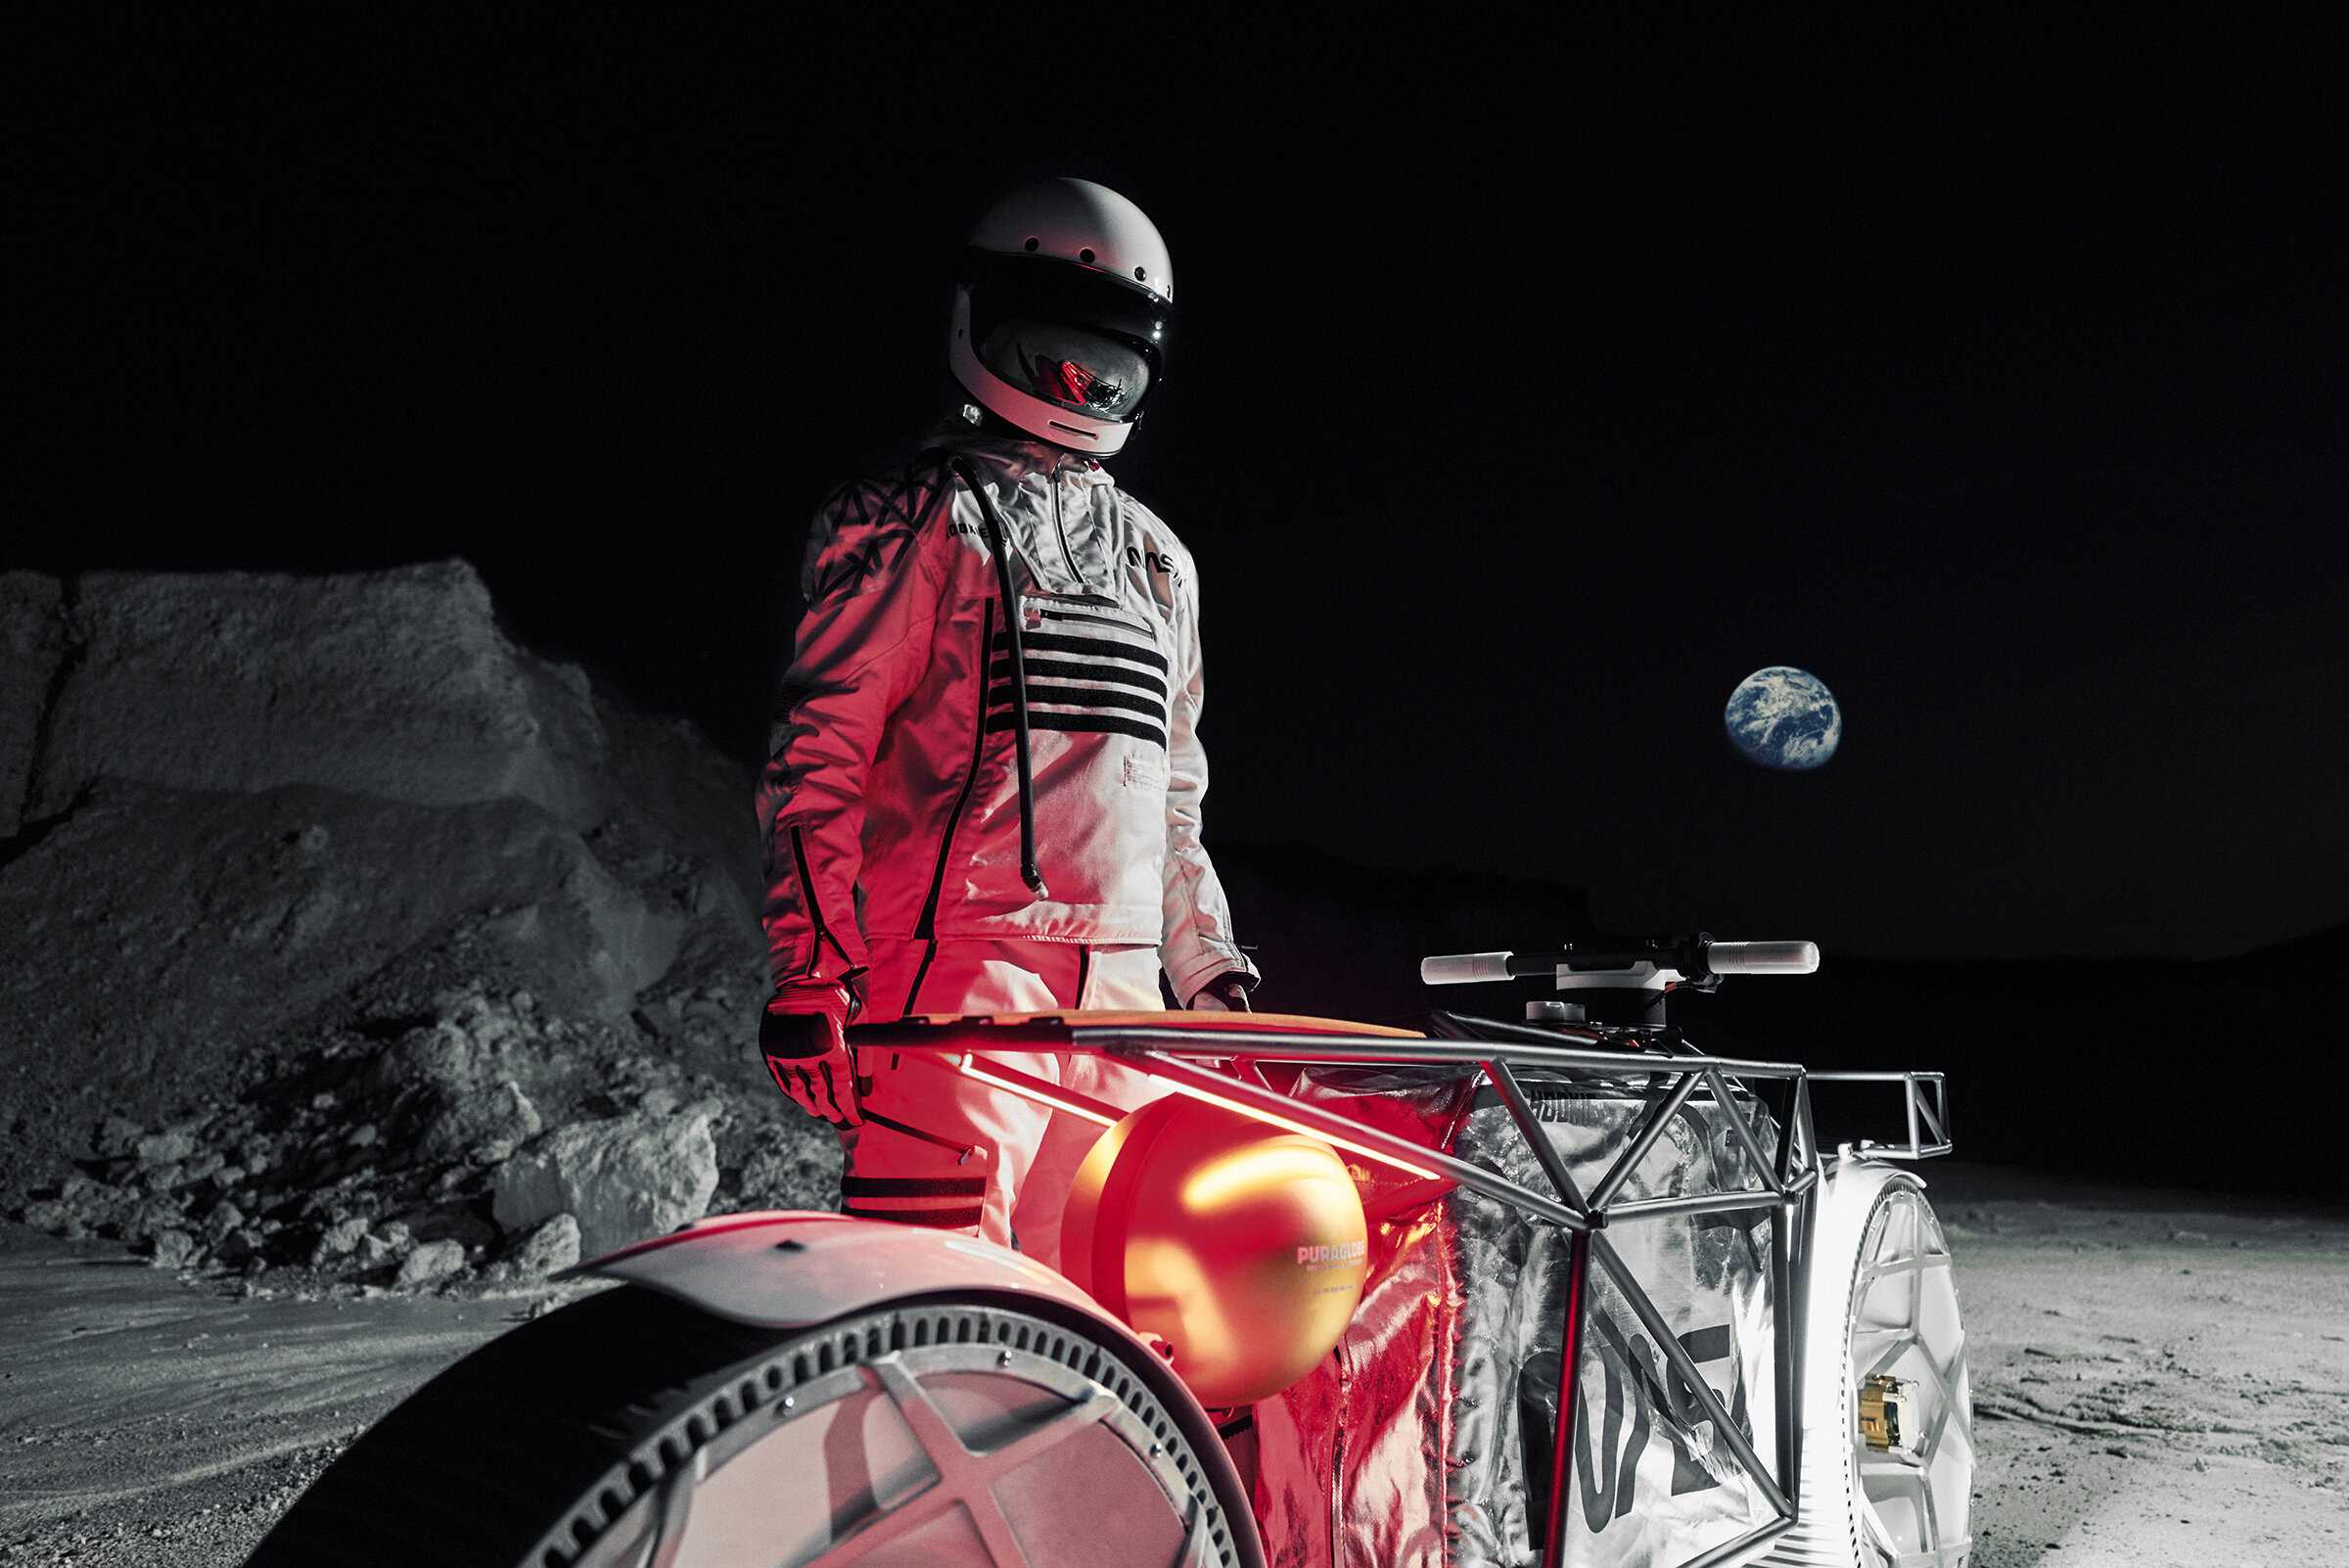 Tardigrade, Sepeda Motor Khusus Bulan Berkecepatan 15 Km/Jam